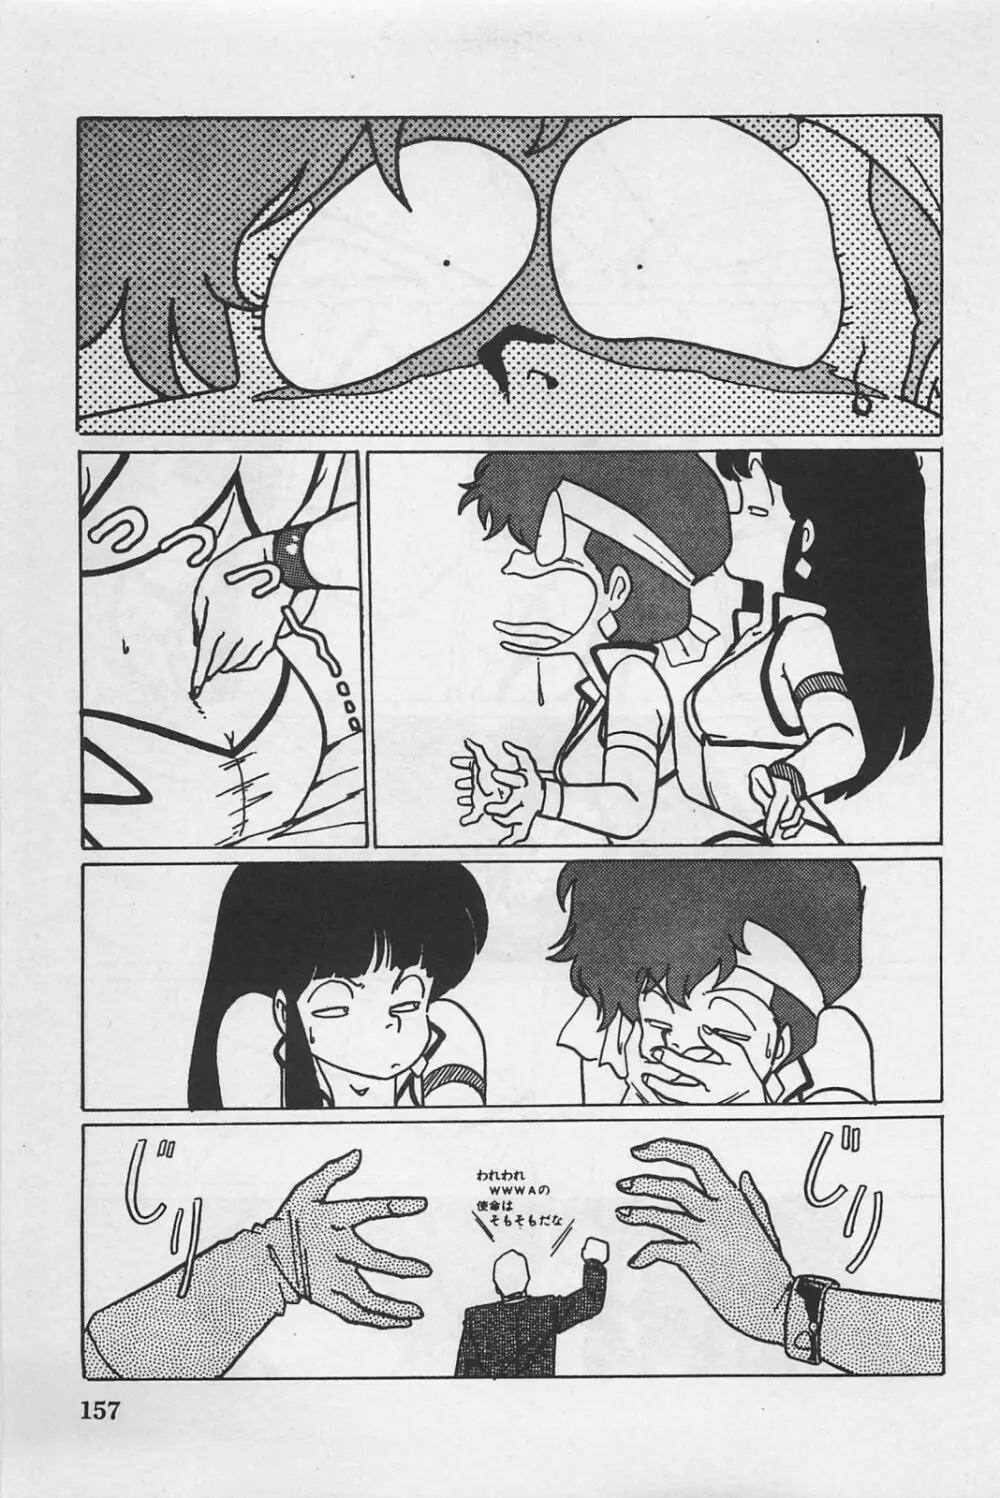 美少女症候群 1985 159ページ